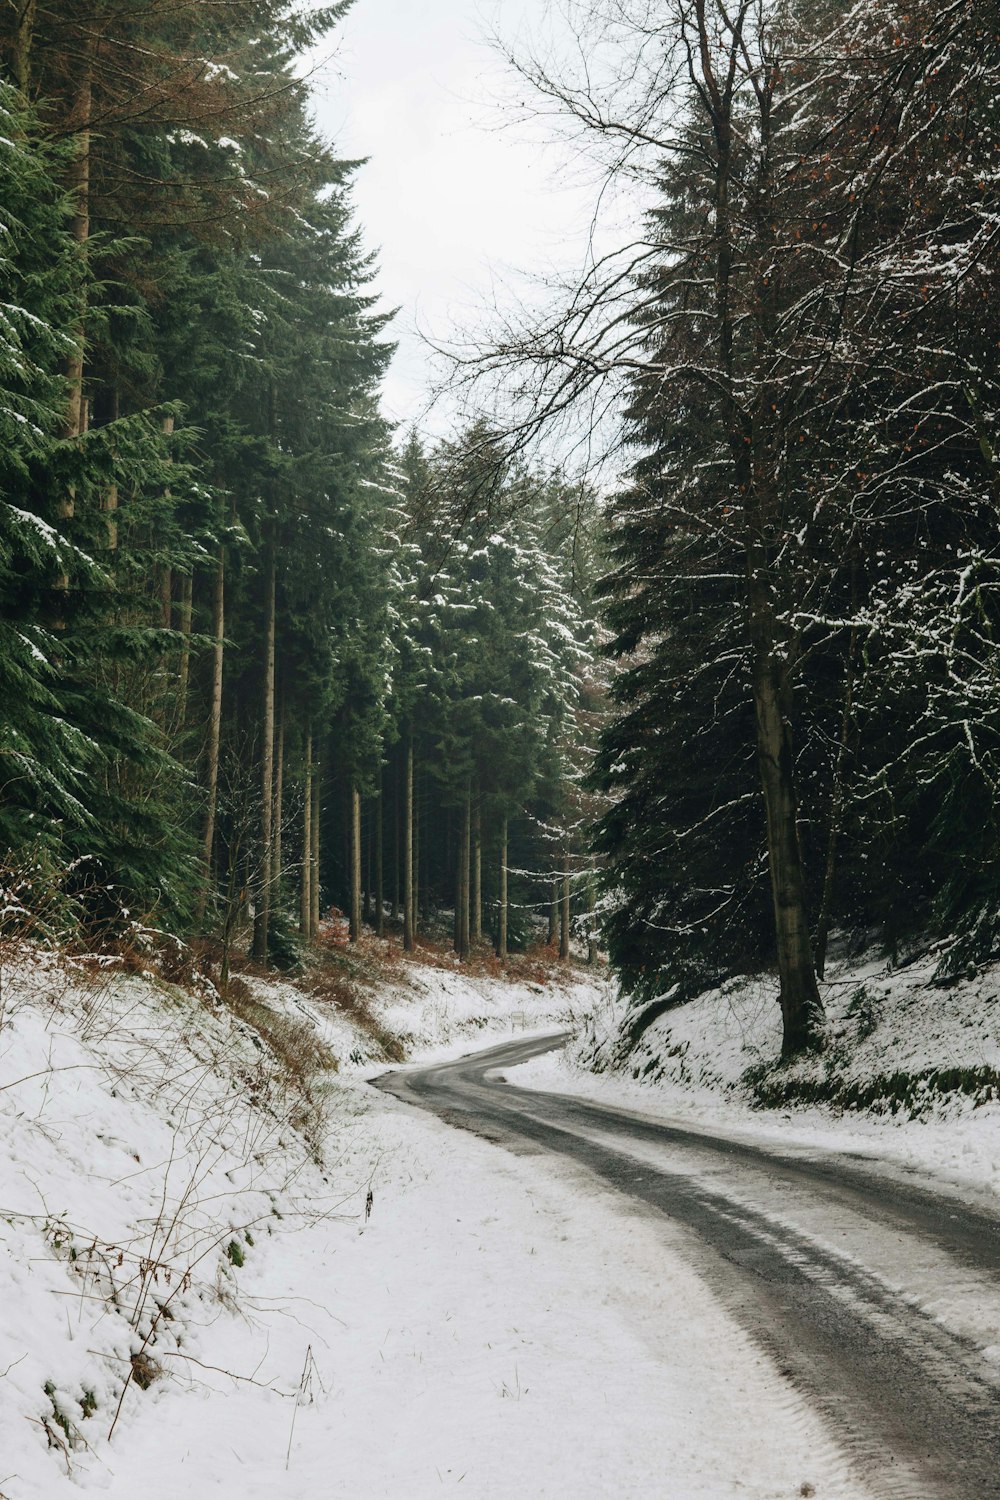 Estrada cinza no meio da floresta coberta de neve